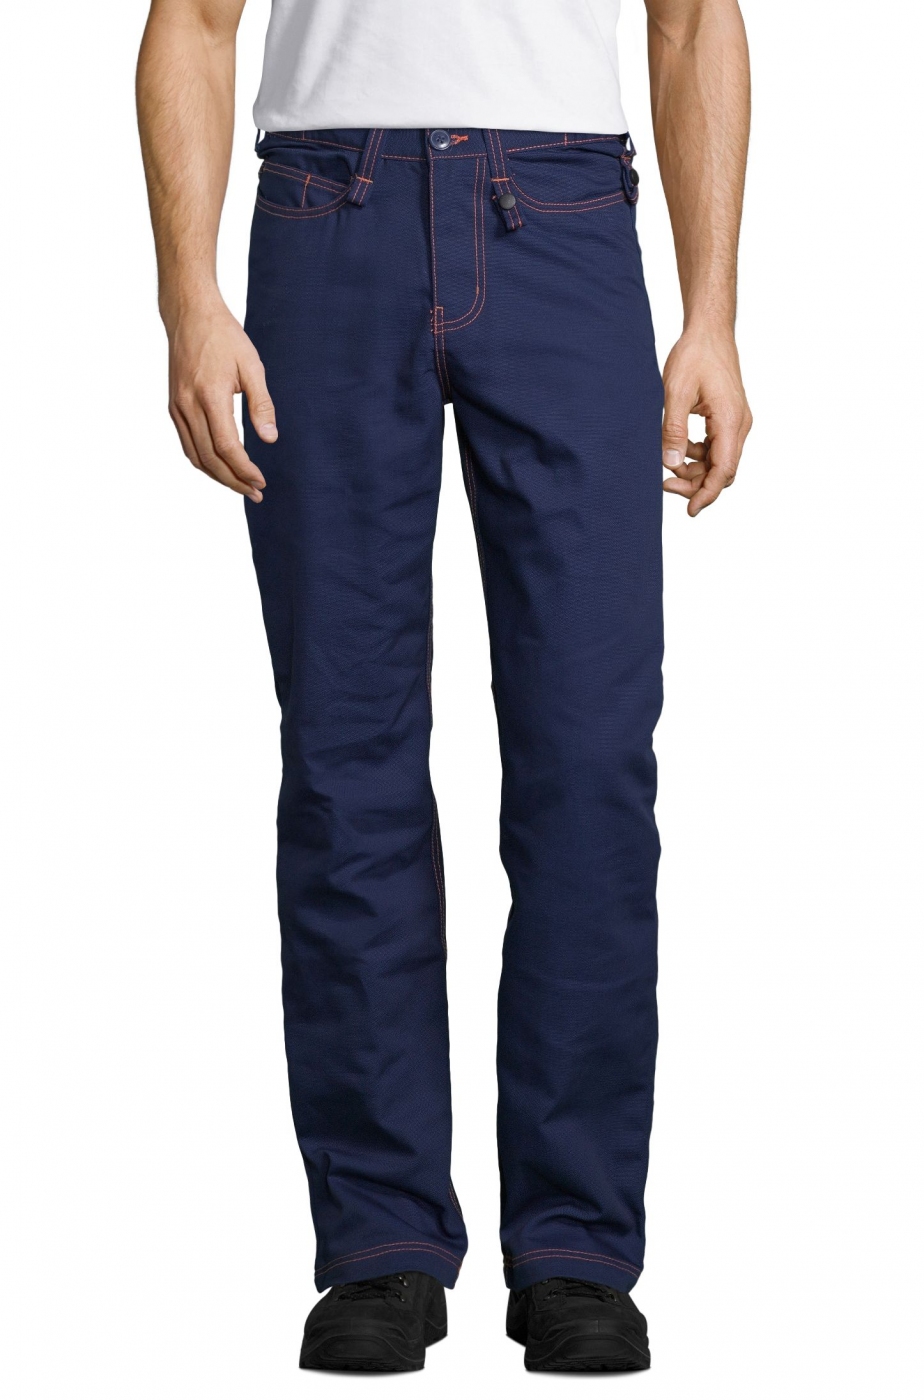 Pantalon de lucru si protectie, tip jeans, material tercot, model barbat - categ. Premium